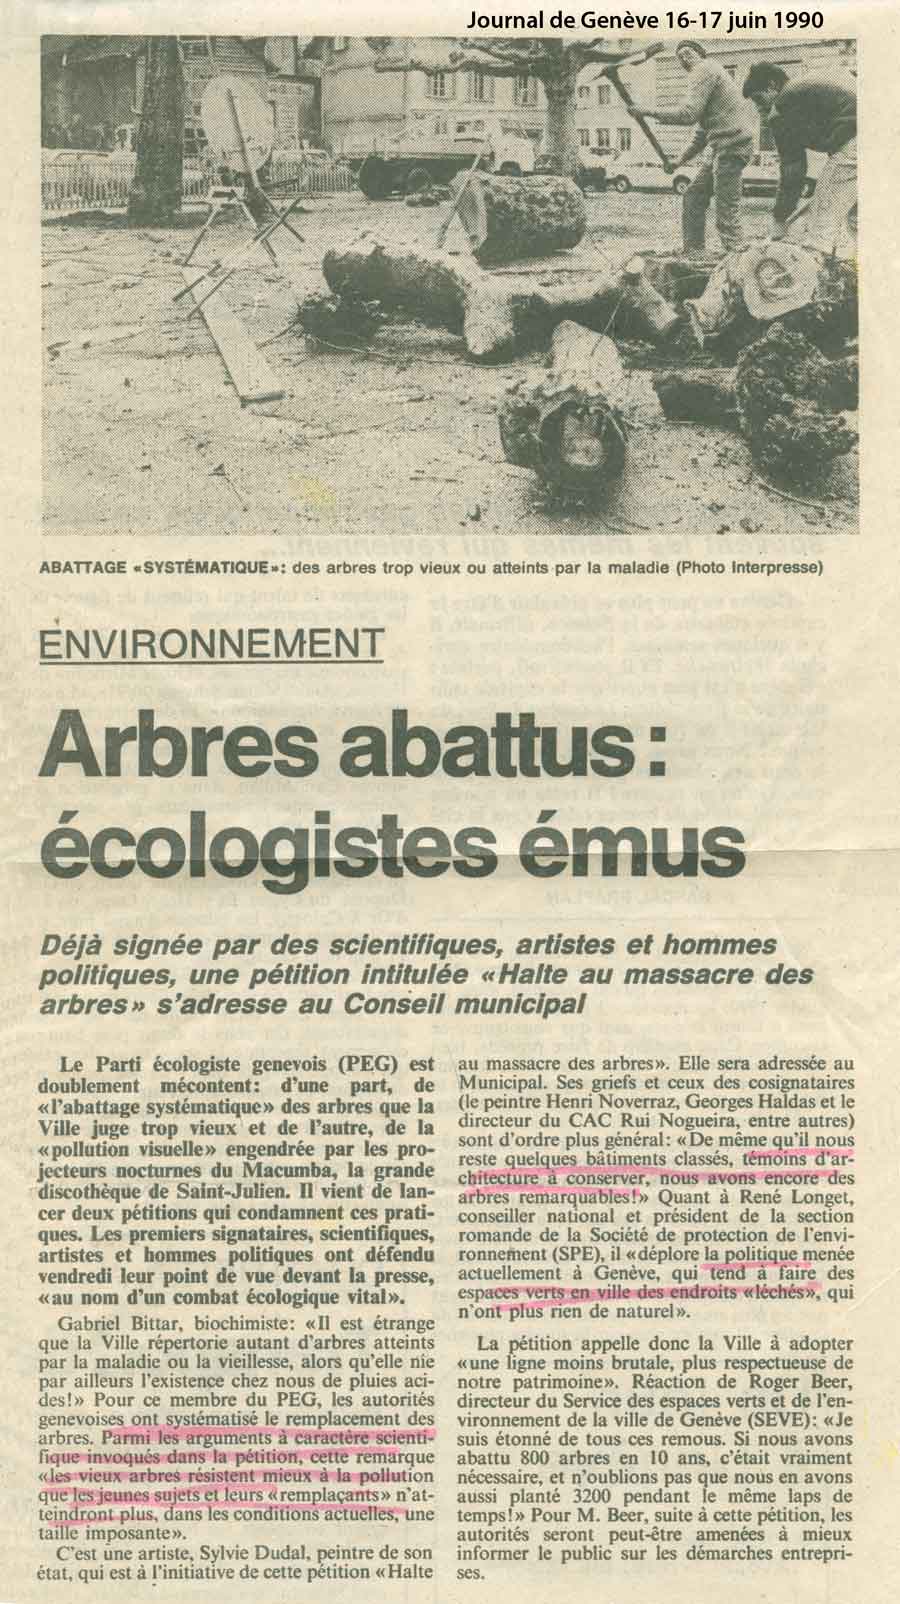 Journal de Genève, 16-17.06.1990